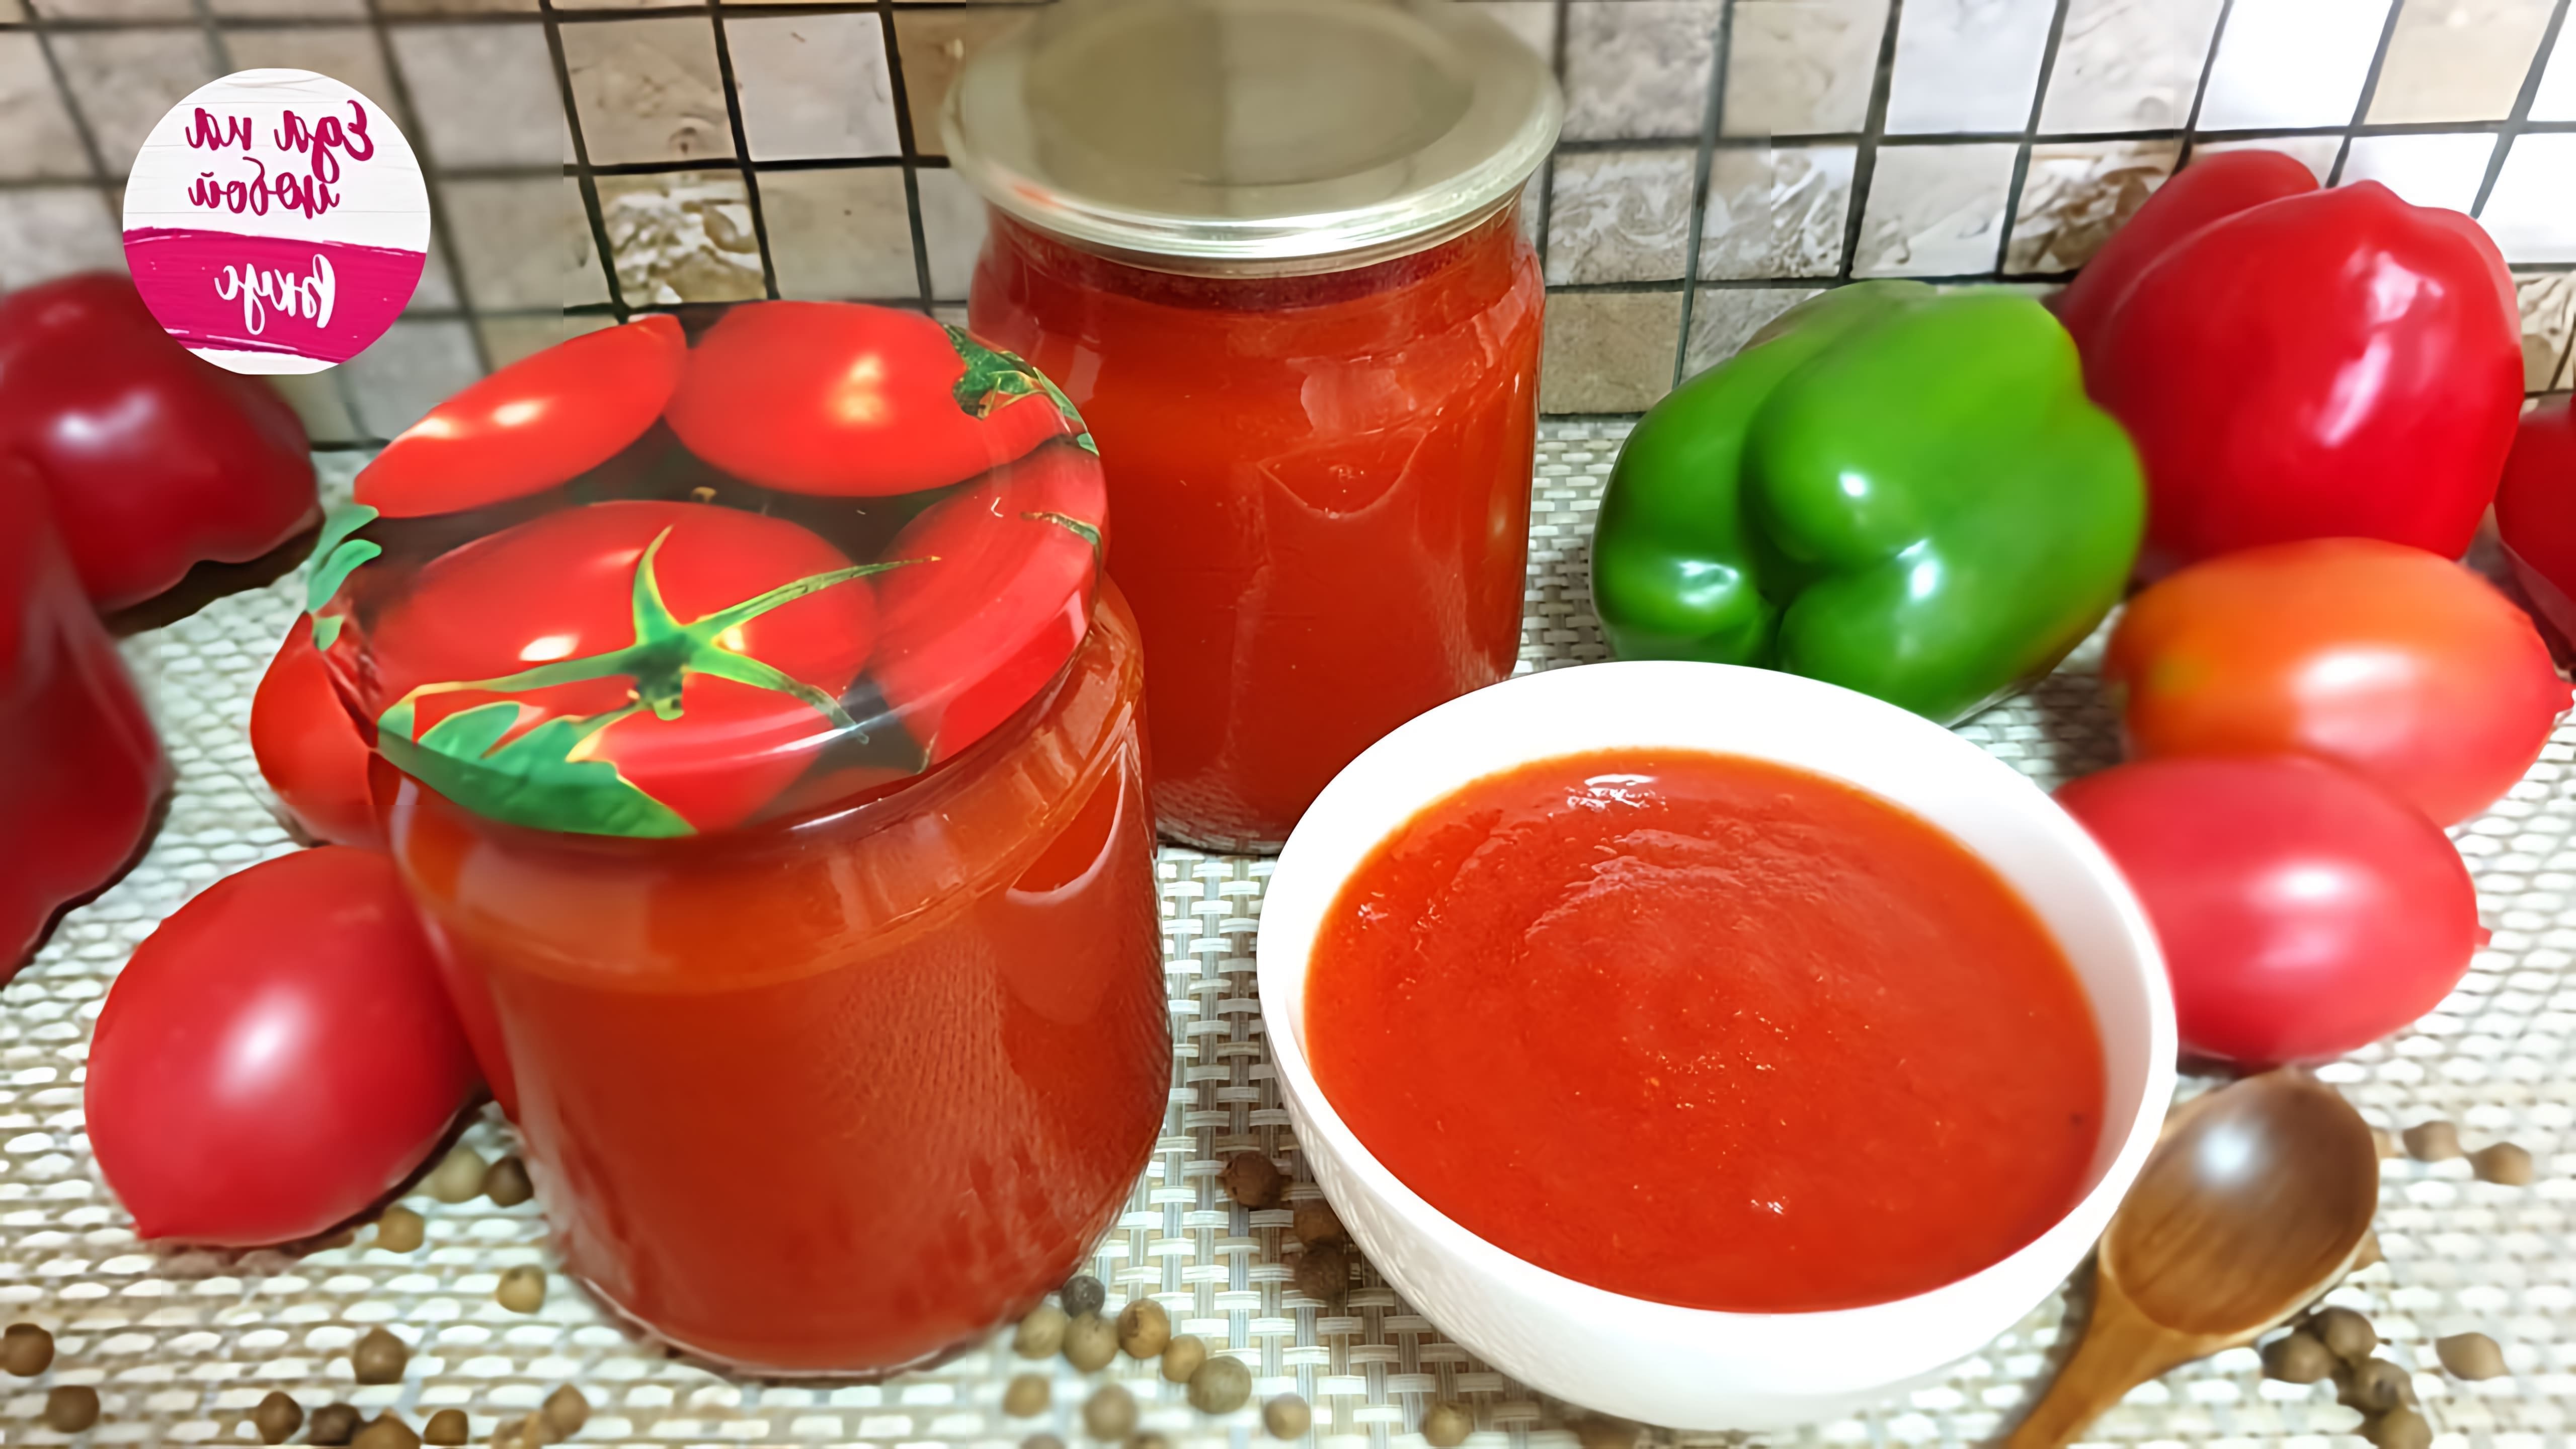 Видео рецепт приготовления густого томатного соуса из помидоров для зимнего хранения